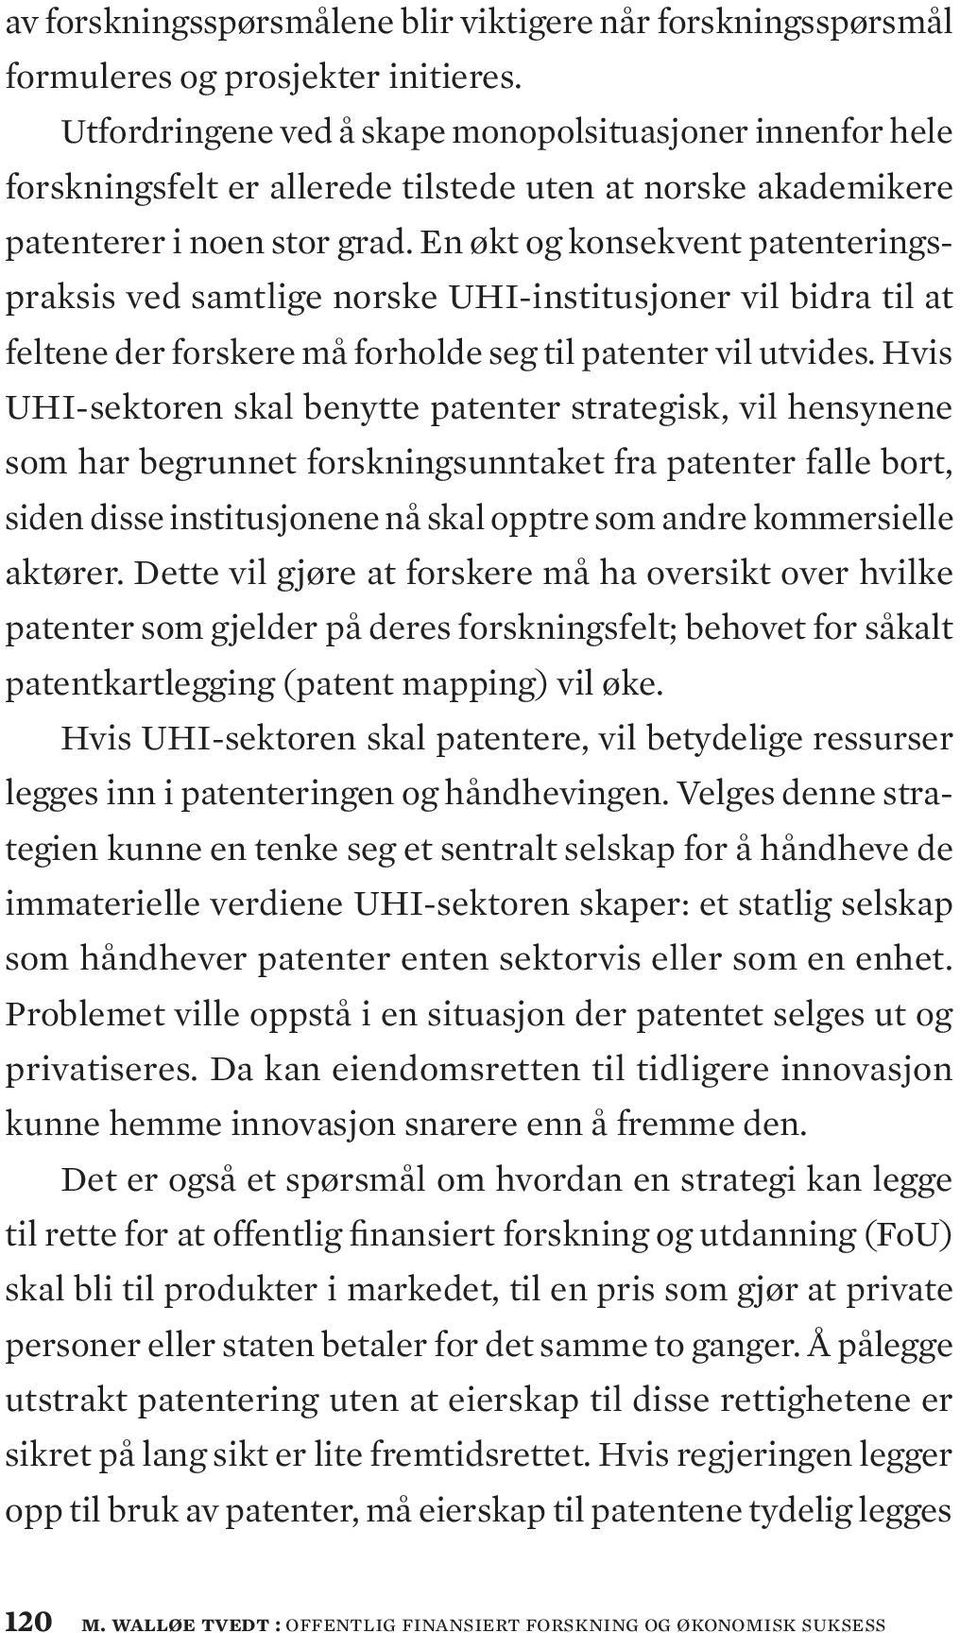 En økt og konsekvent patenteringspraksis ved samtlige norske UHI-institusjoner vil bidra til at feltene der forskere må forholde seg til patenter vil utvides.